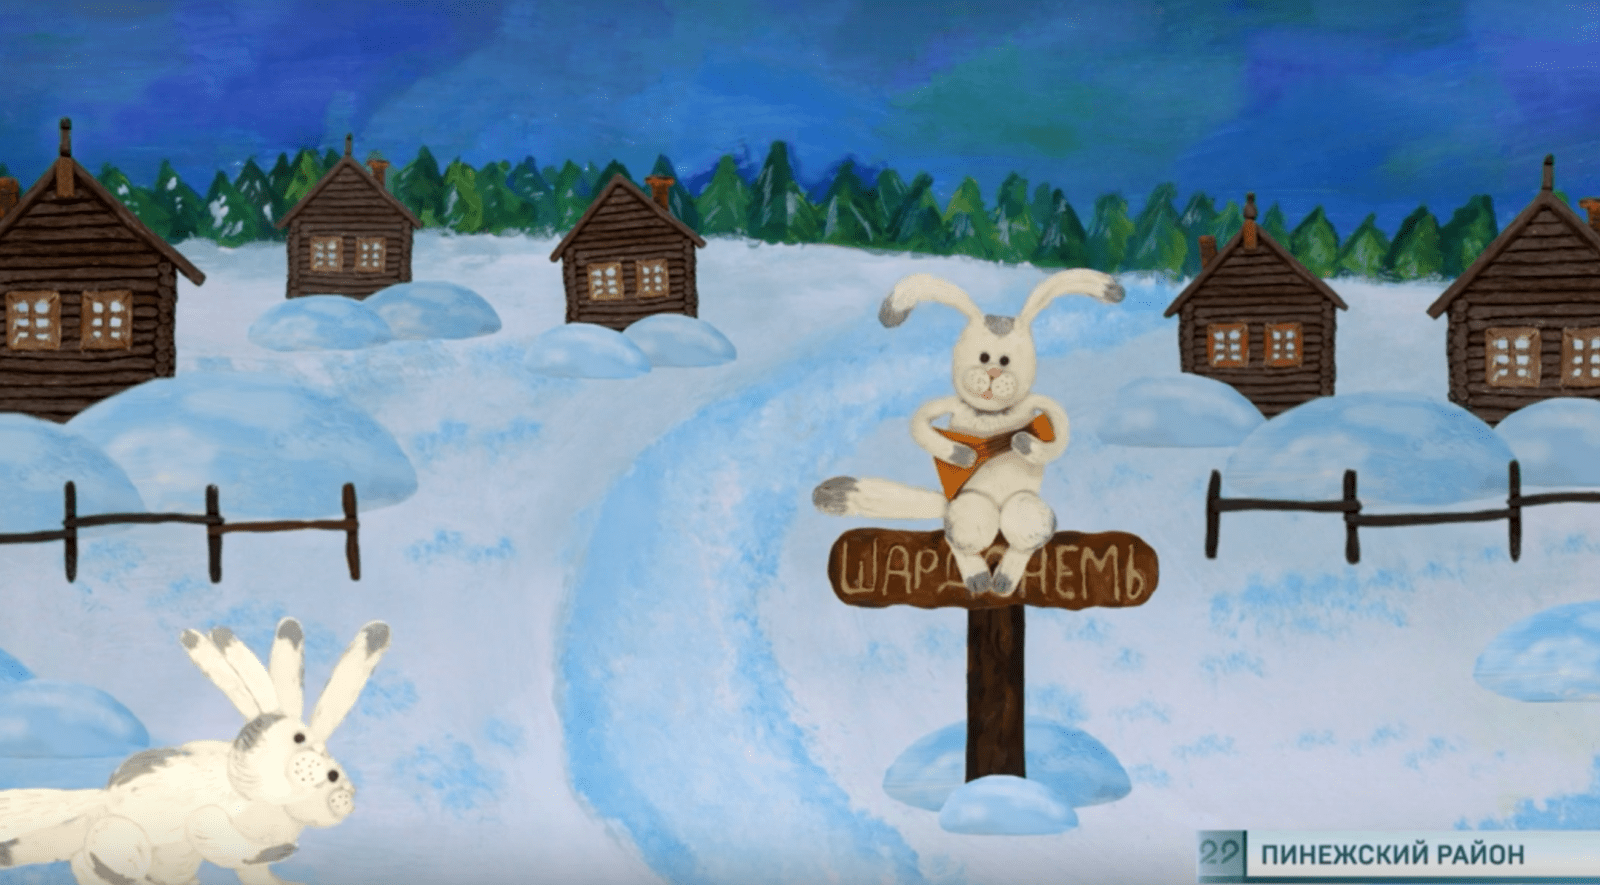 5 мультфильмов о Пинежском крае — это результат работы летней мультсмены